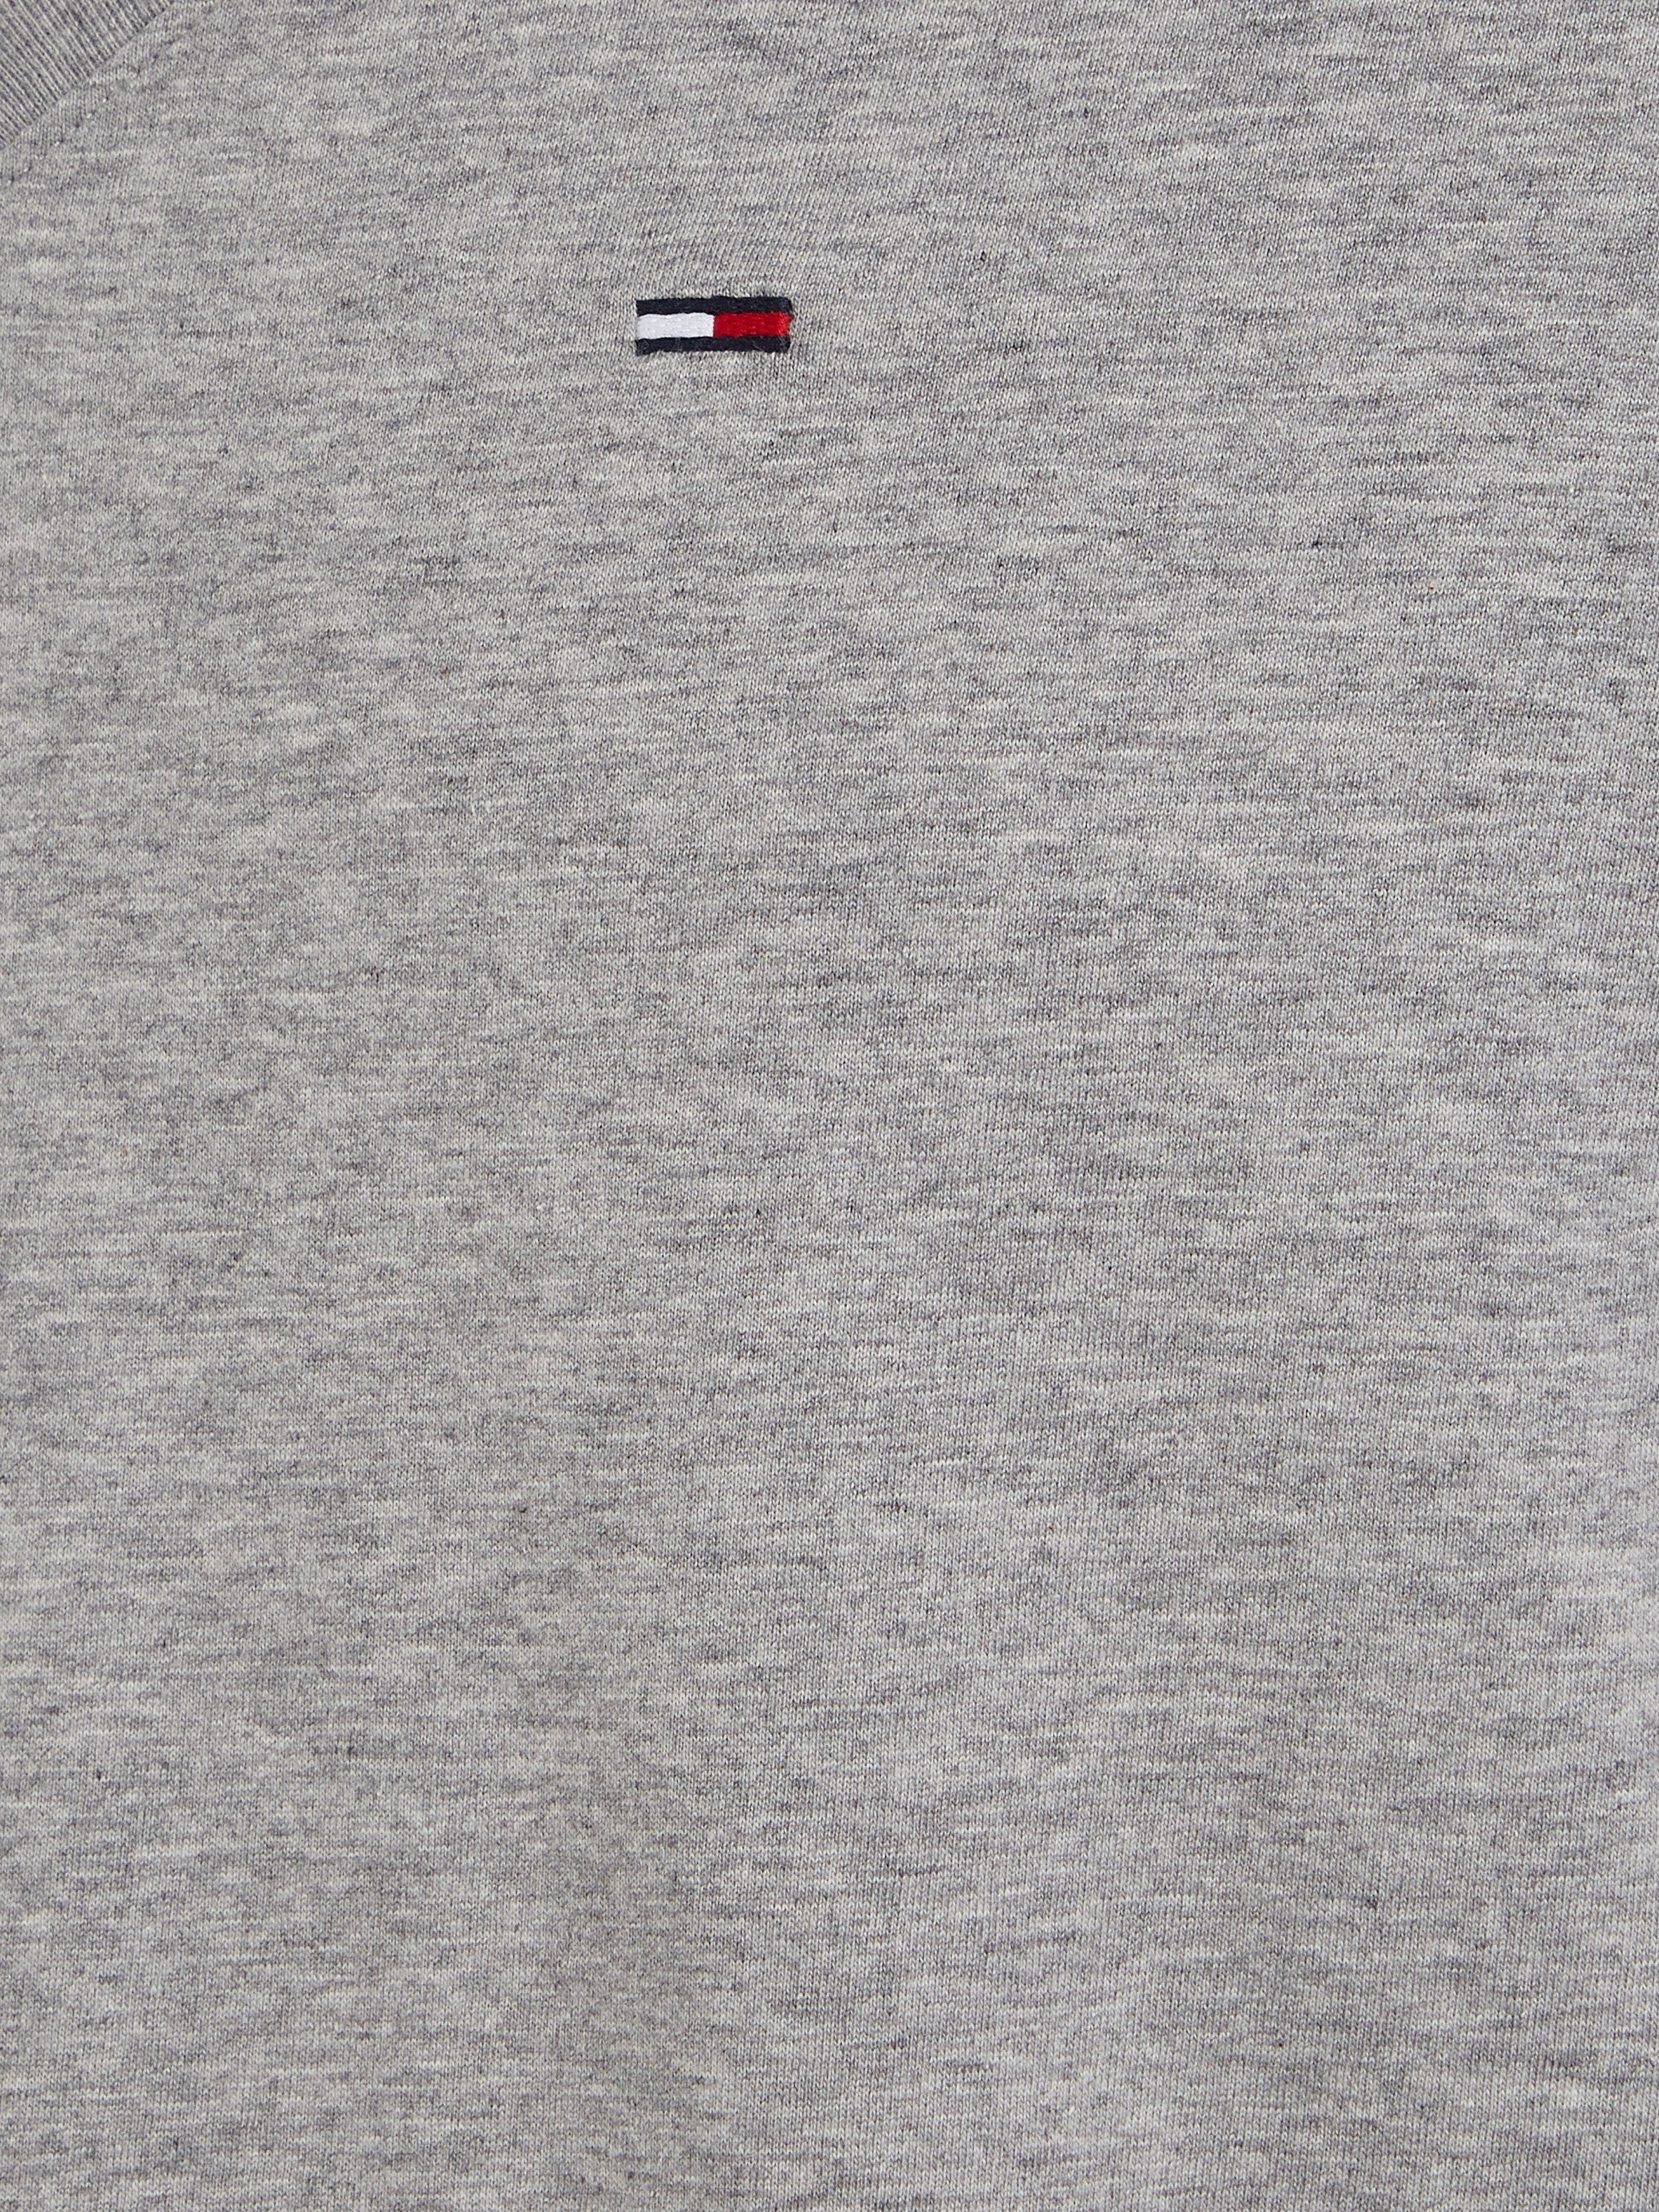 Tommy Jeans T-Shirt TJM ORIGINAL light und Logo-Flag mit heather NECK dezenter 038 grey TEE V-Ausschnitt JERSEY V